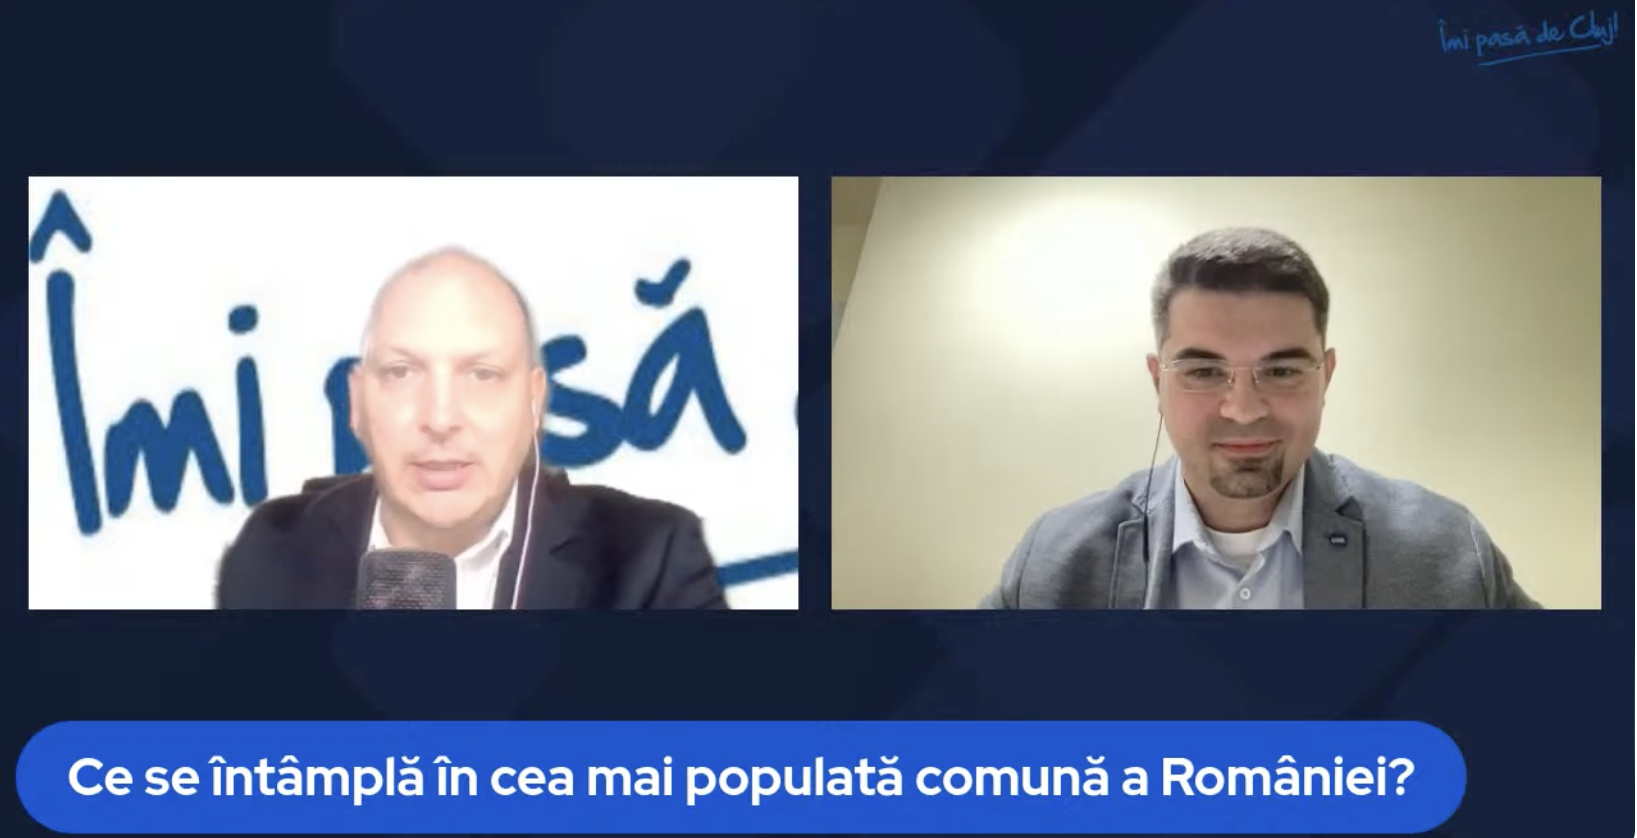 Îmi pasă de Cluj - Interviu Flaviu Udrea, Candidat USR la Primăria Florești